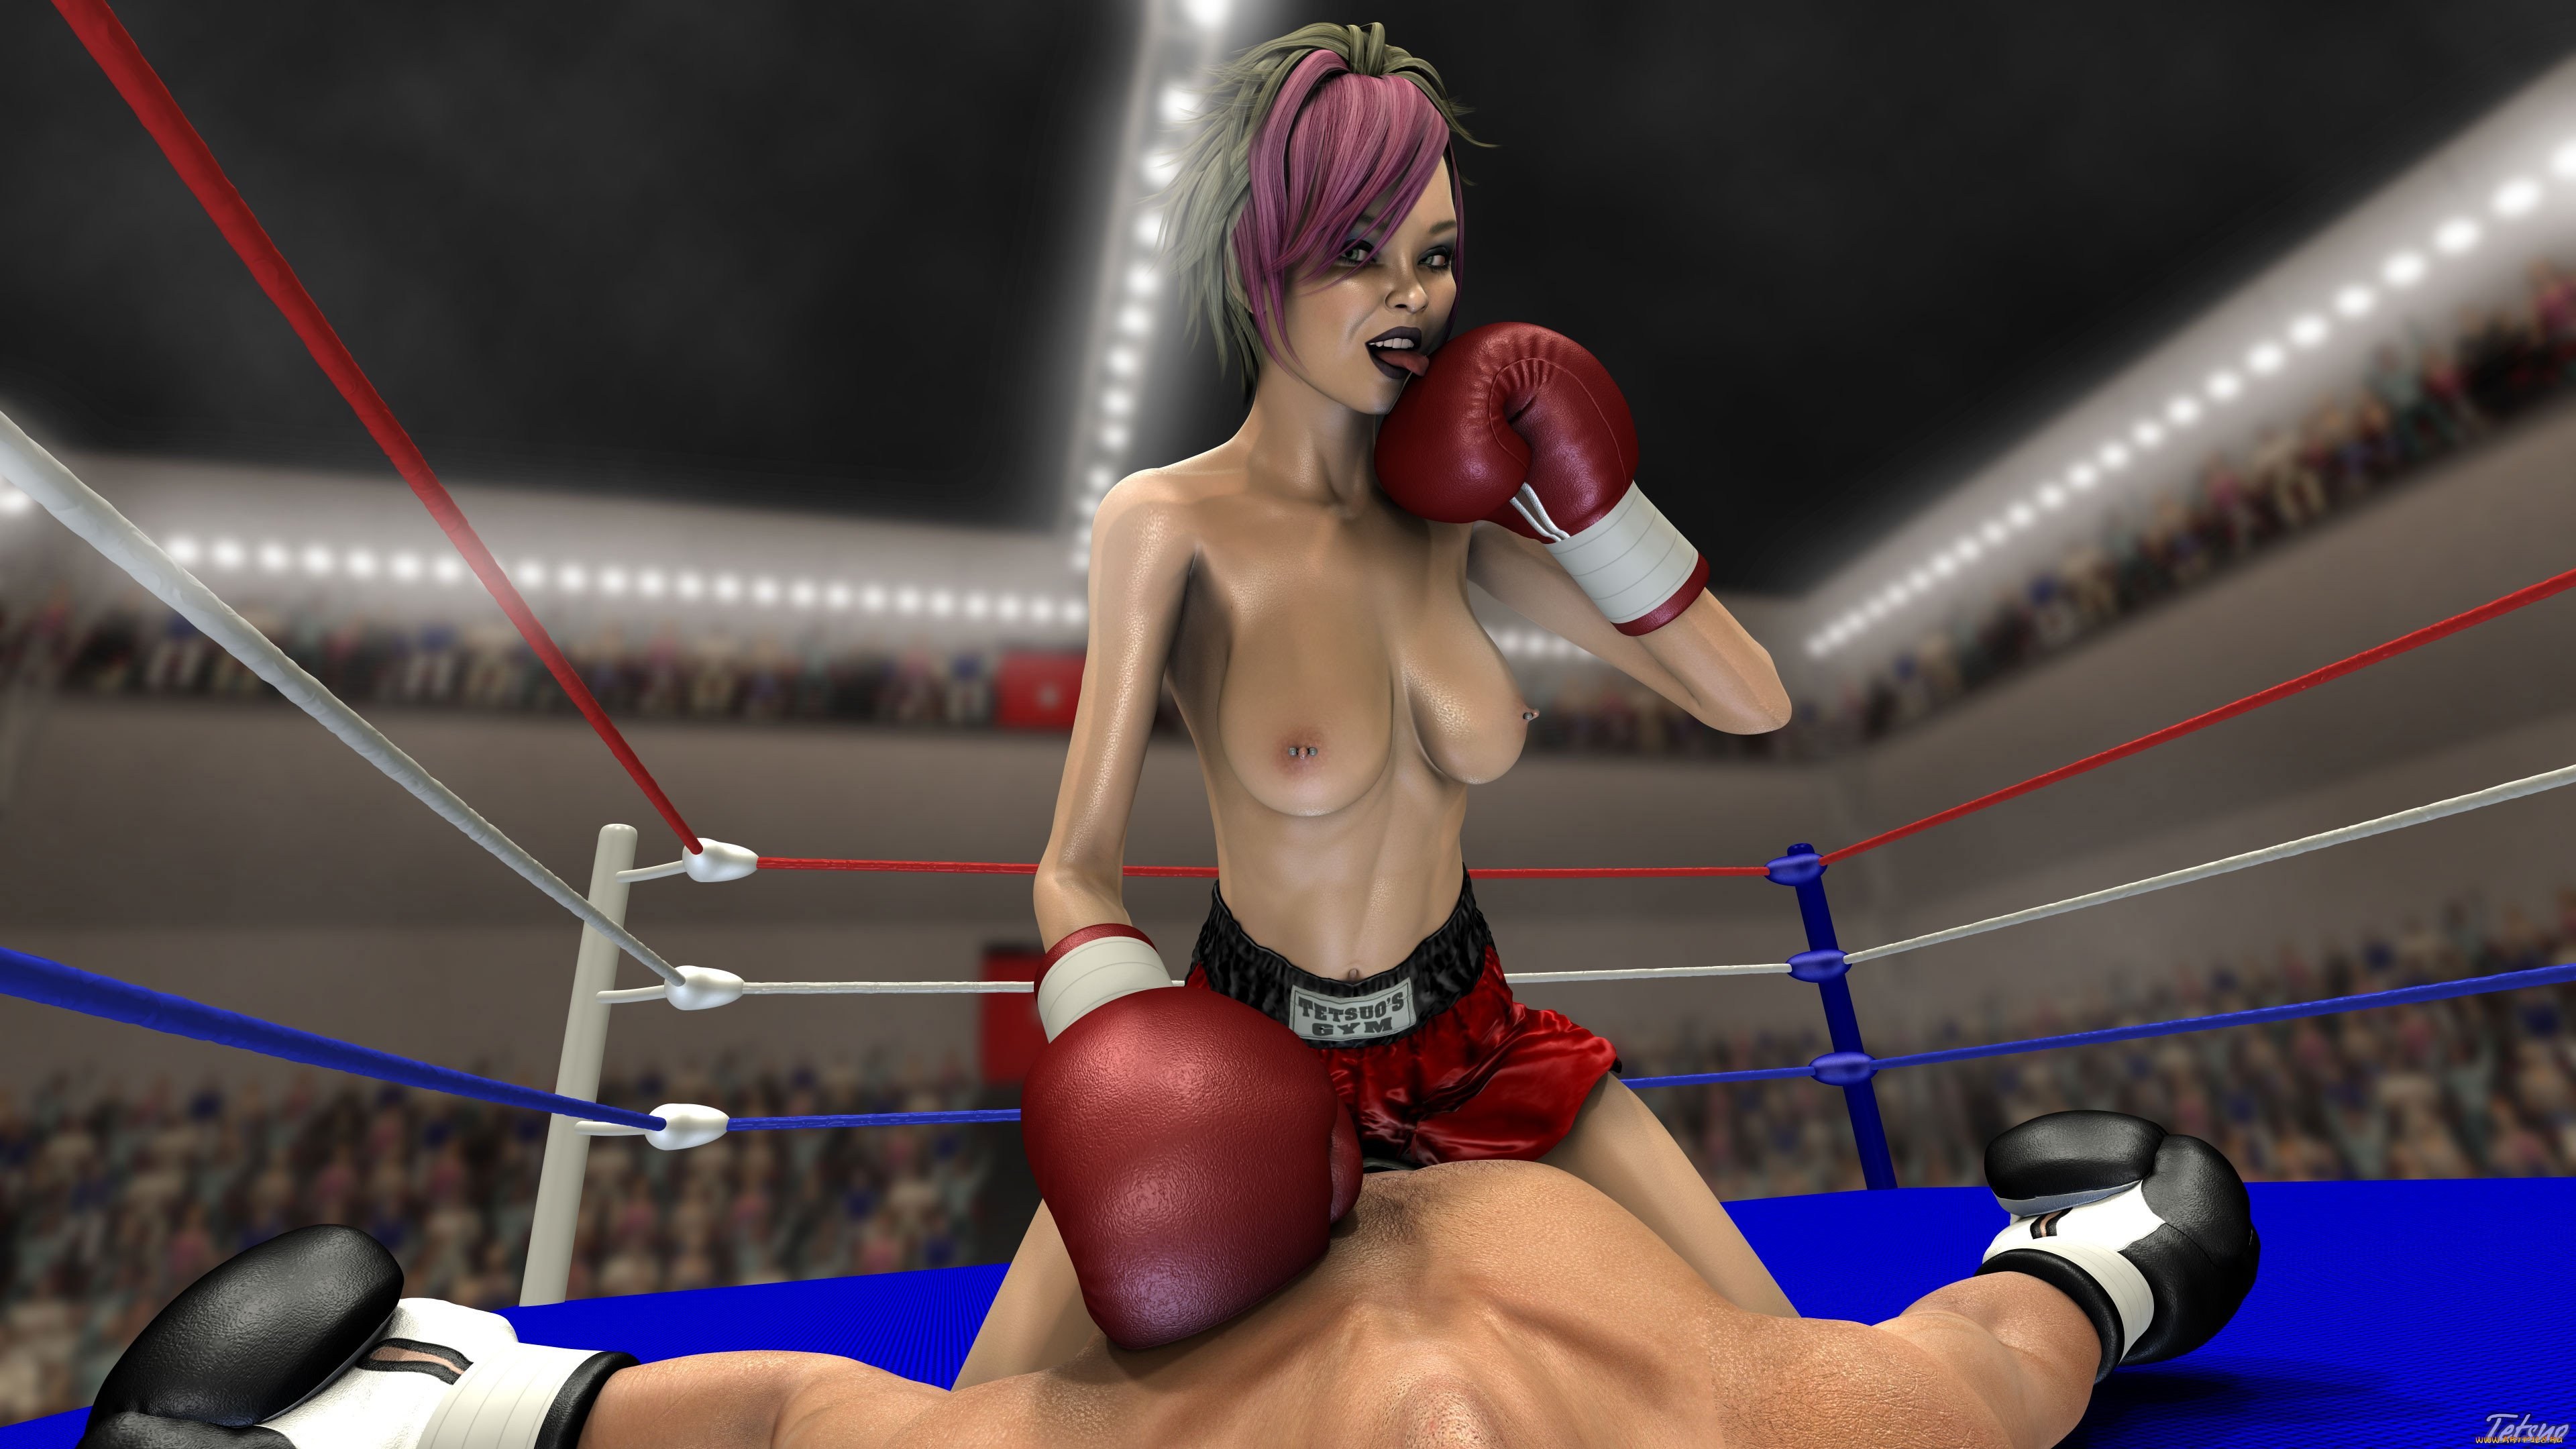 Boxing Anal Porn - Boxing Girl (95 photos) - porn ddeva